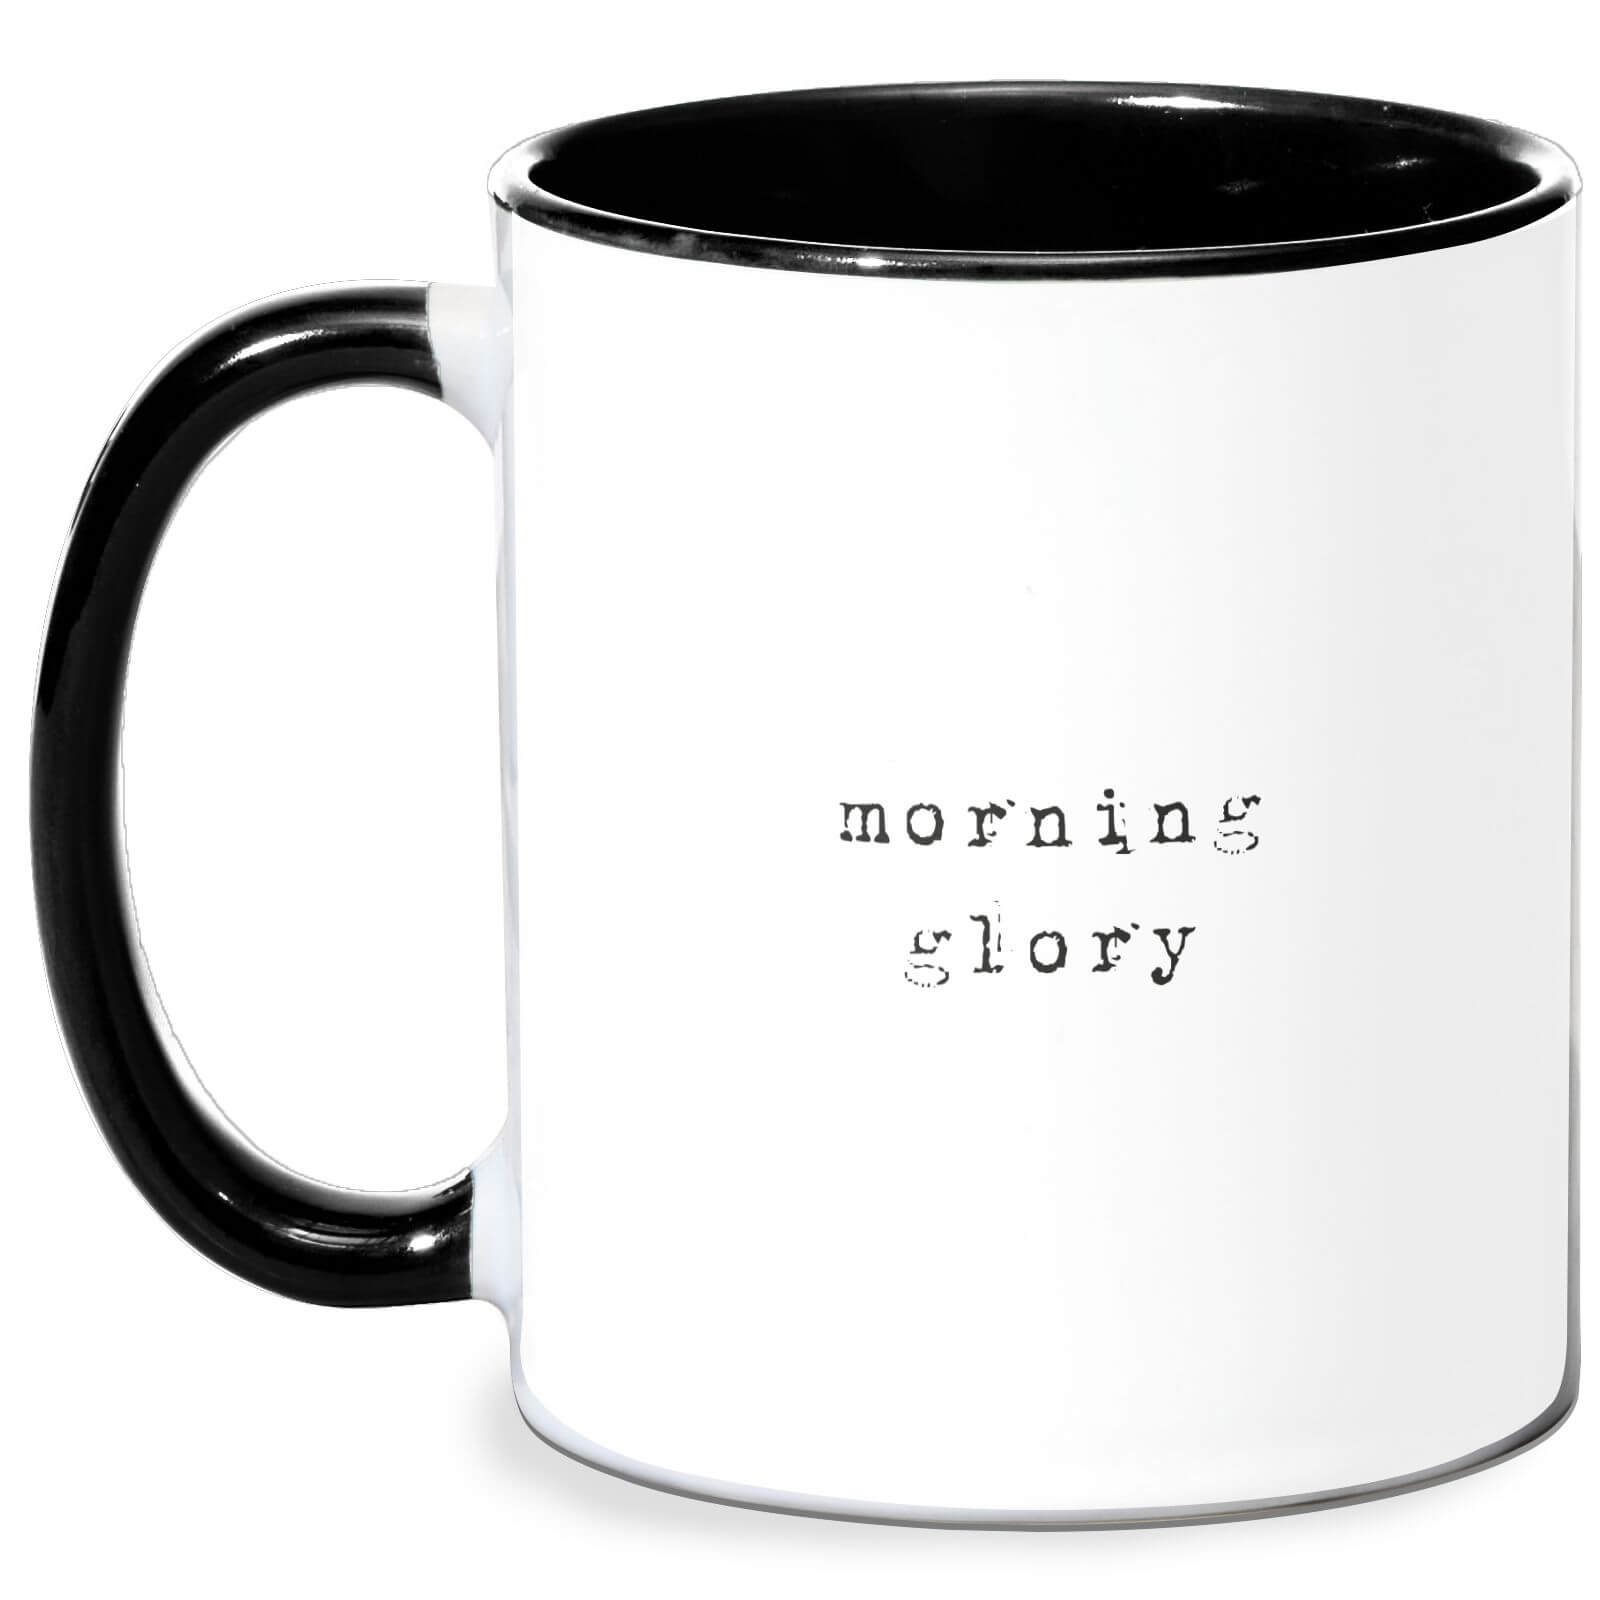 Morning Glory Mug - White/Black